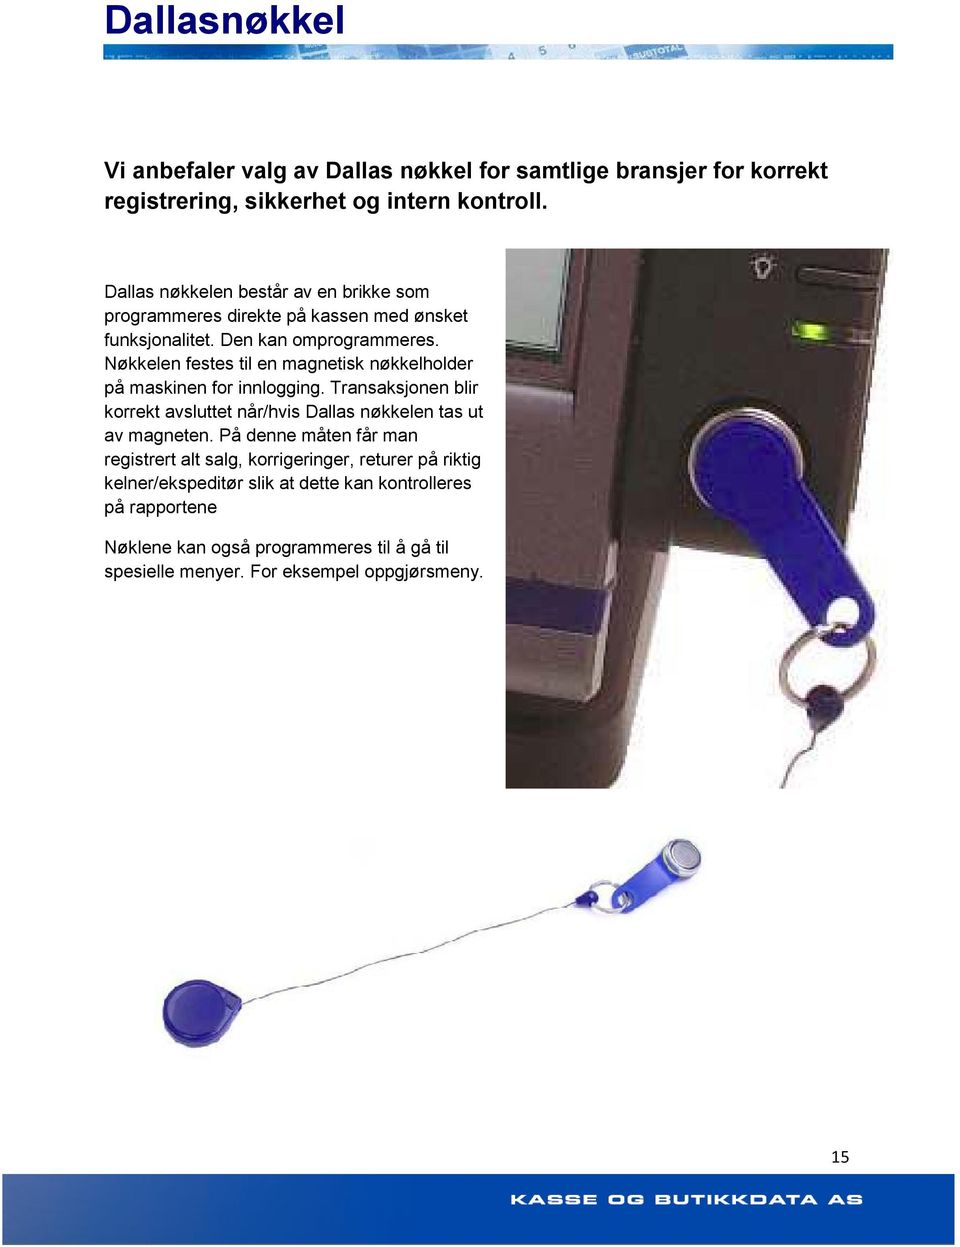 Nøkkelen festes til en magnetisk nøkkelholder på maskinen for innlogging. Transaksjonen blir korrekt avsluttet når/hvis Dallas nøkkelen tas ut av magneten.